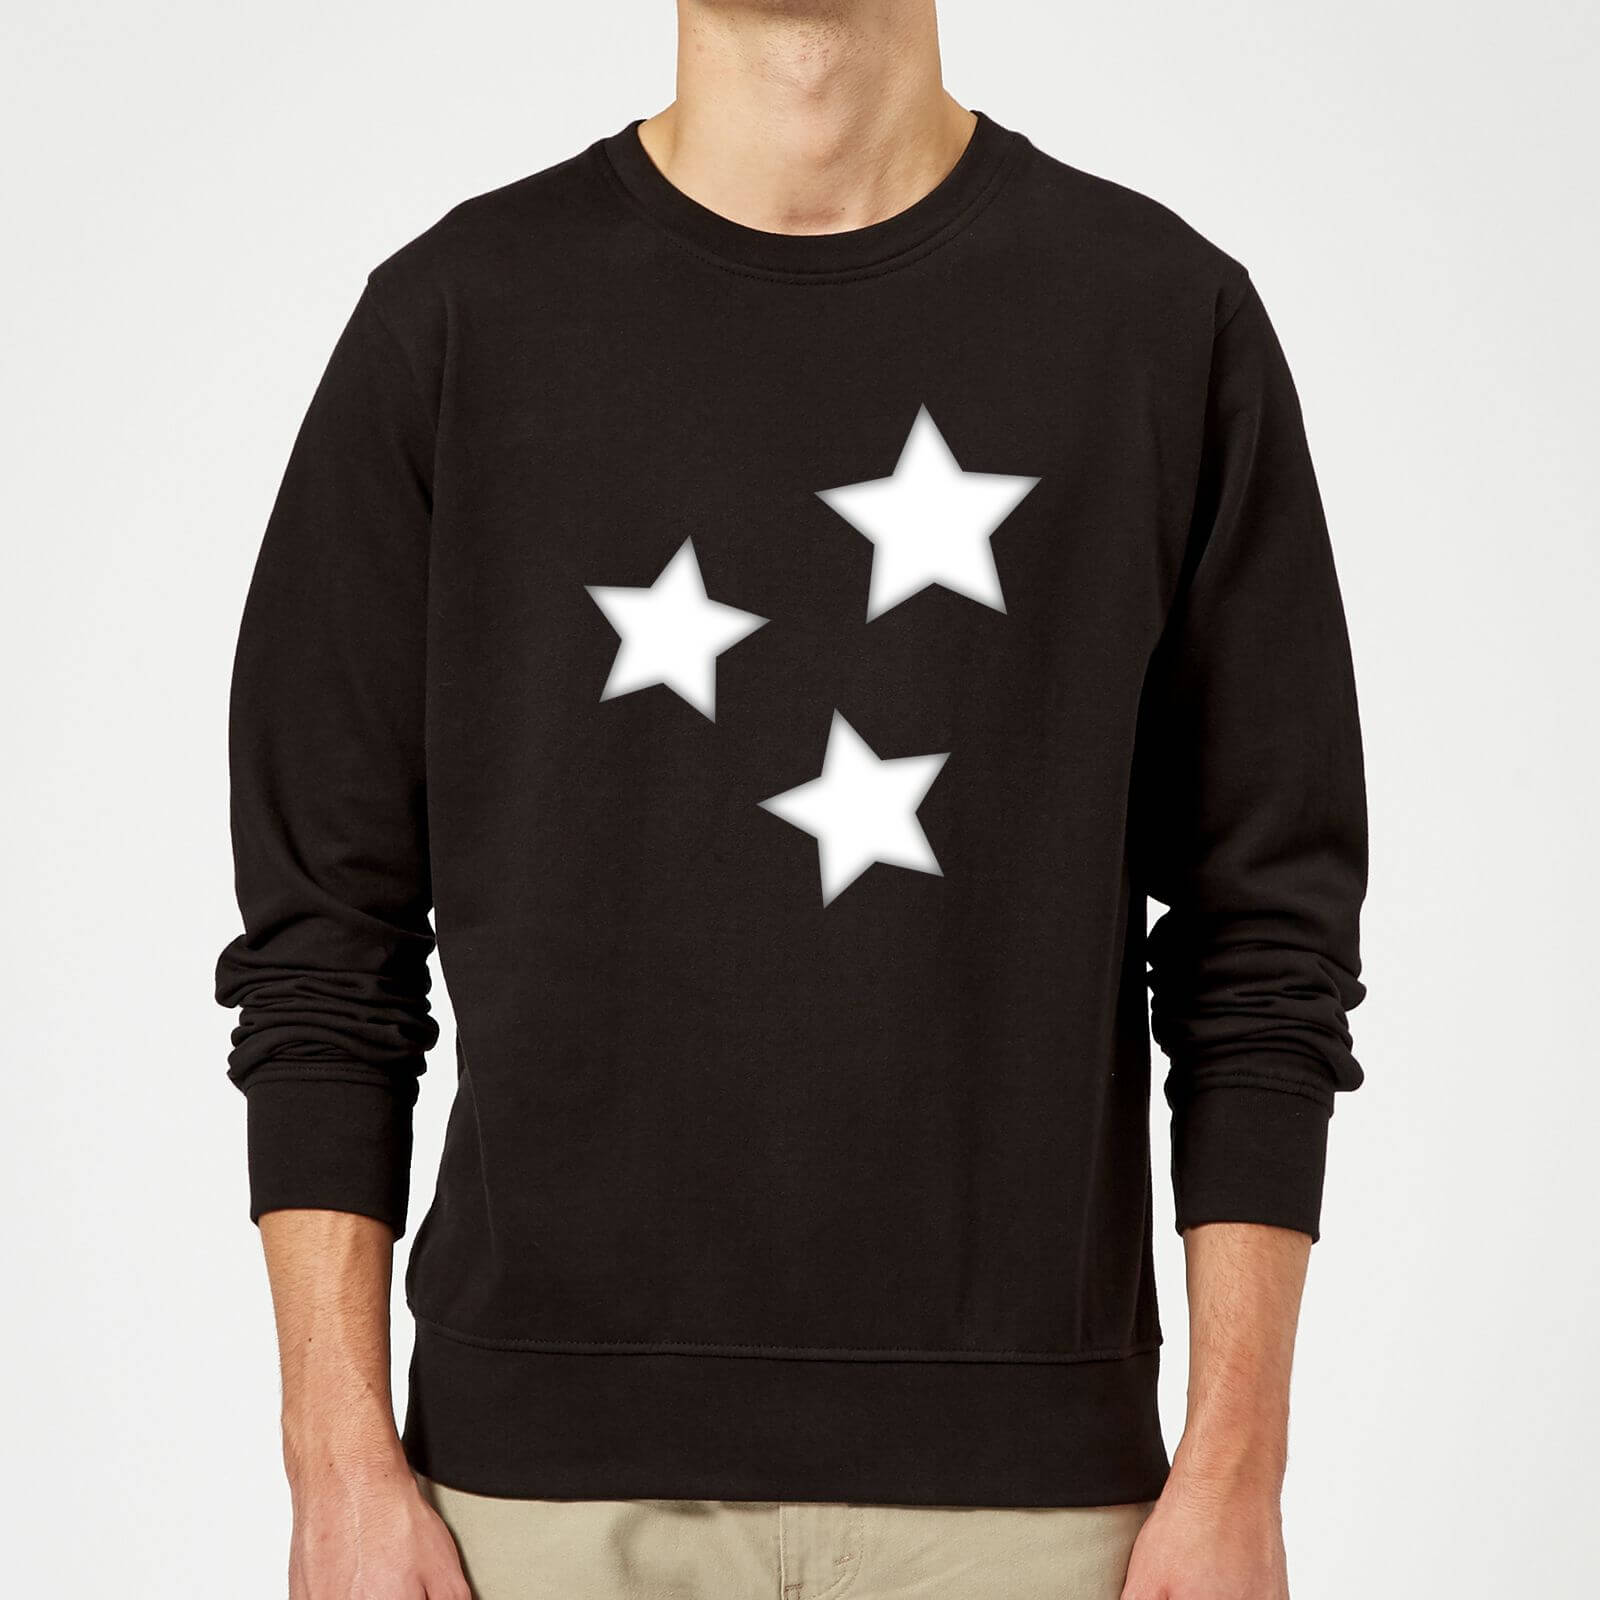 Stars Sweatshirt - Black - 5Xl - Black